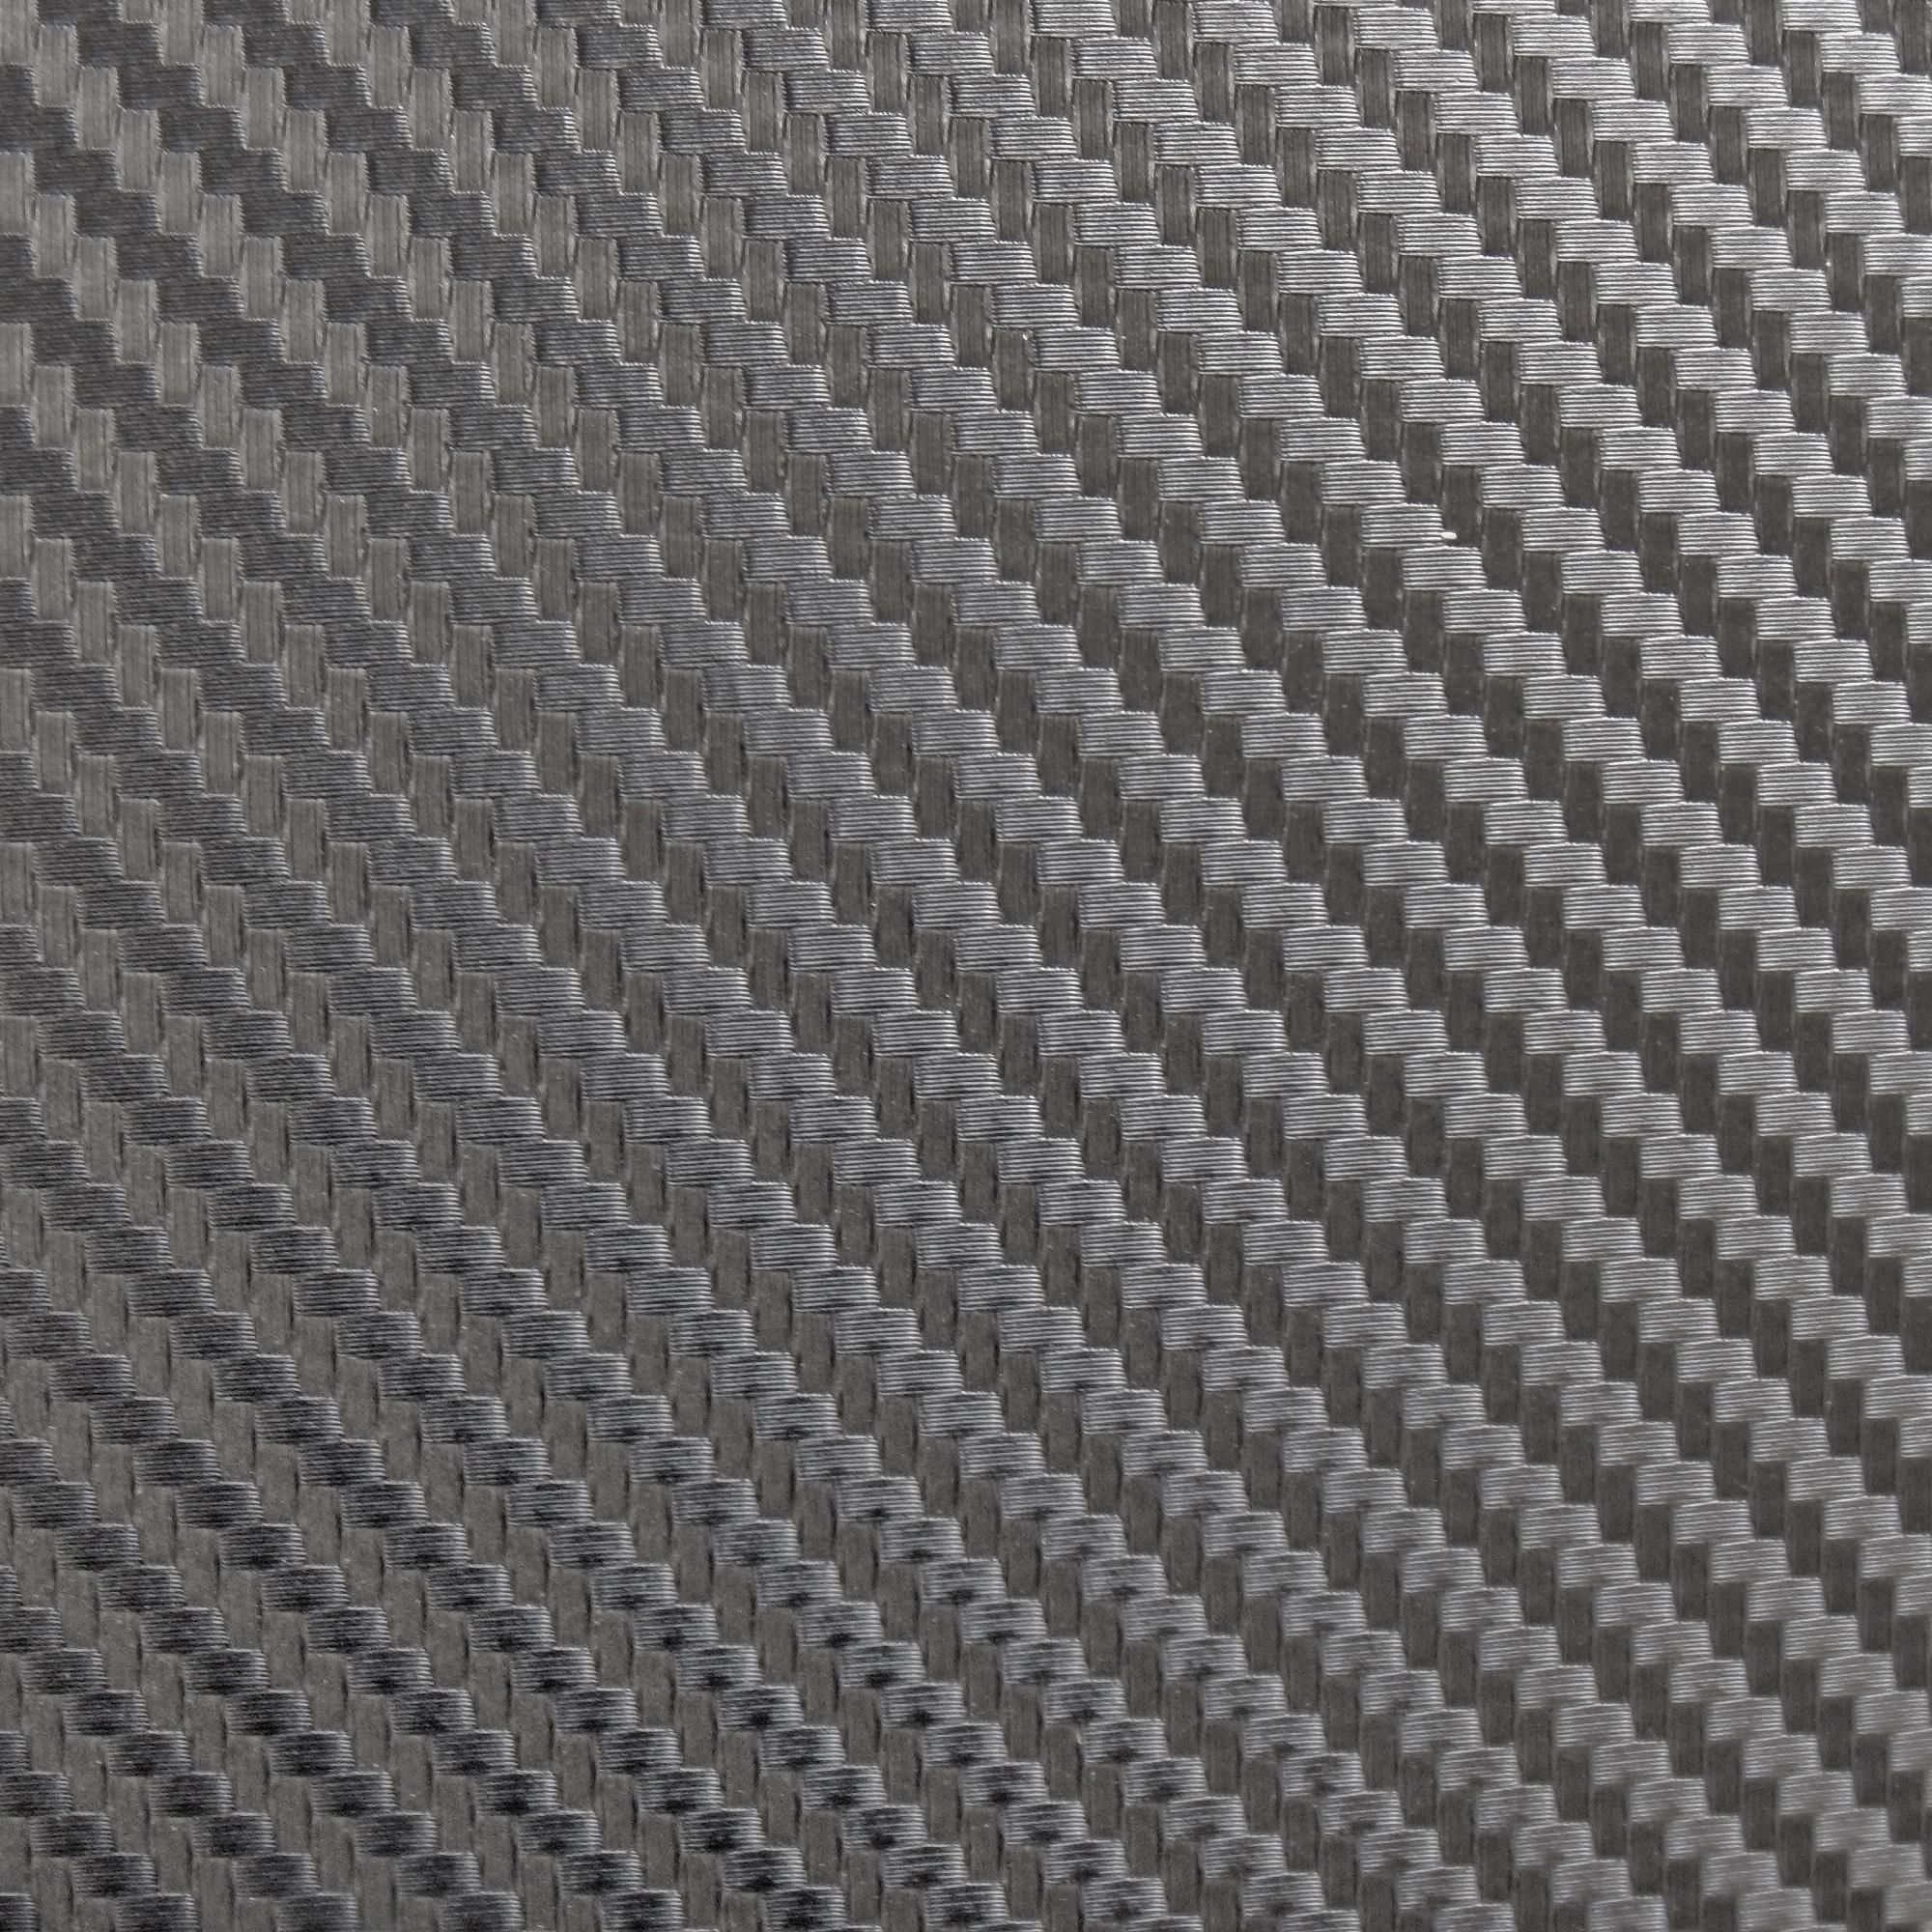 carbon fiber texture - Cerca con Google | Materials | Pinterest | Mb uk